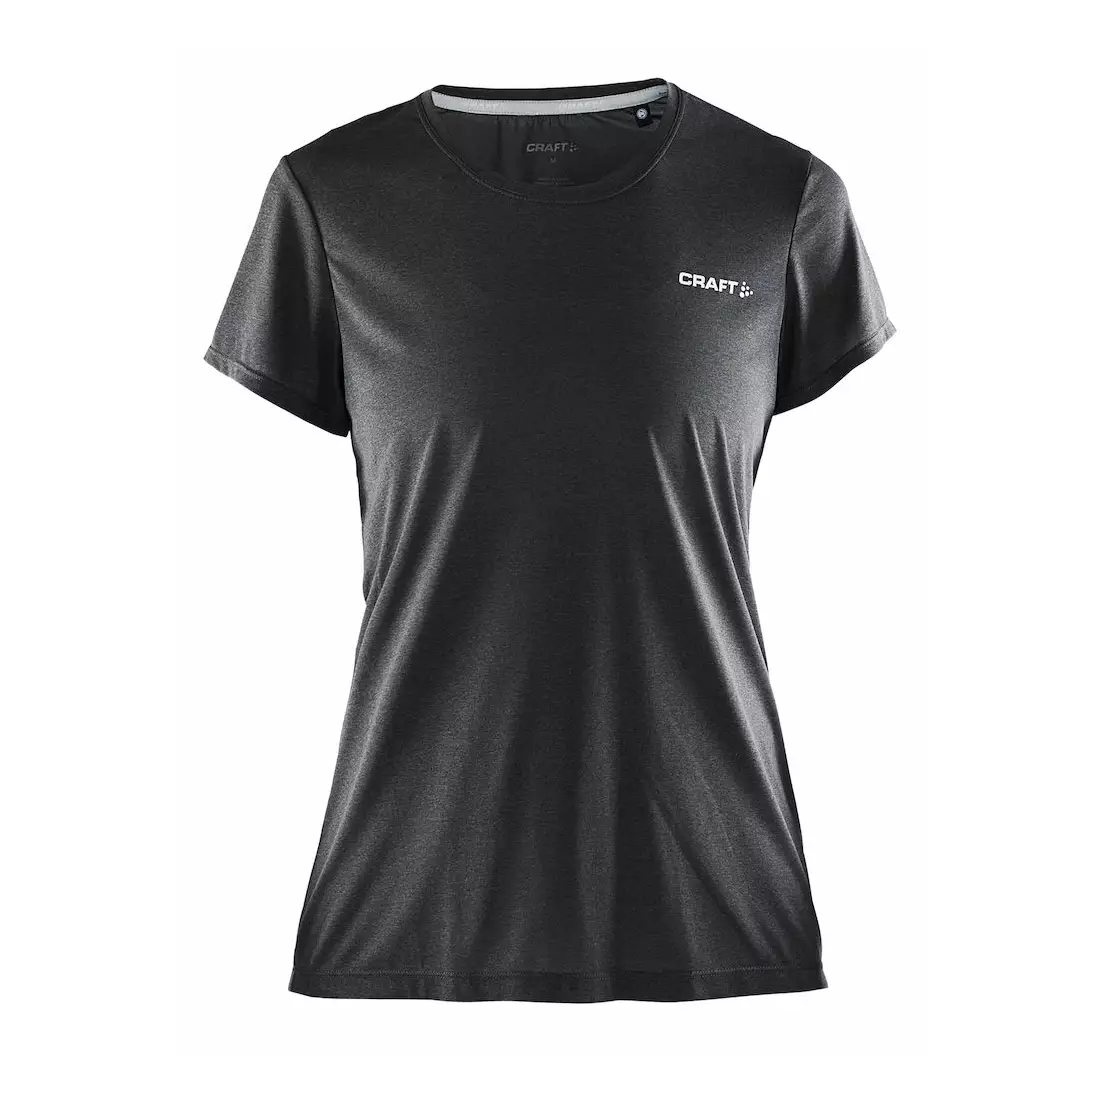 CRAFT PURE LIGHT women's fitness T-shirt 1903320-9999